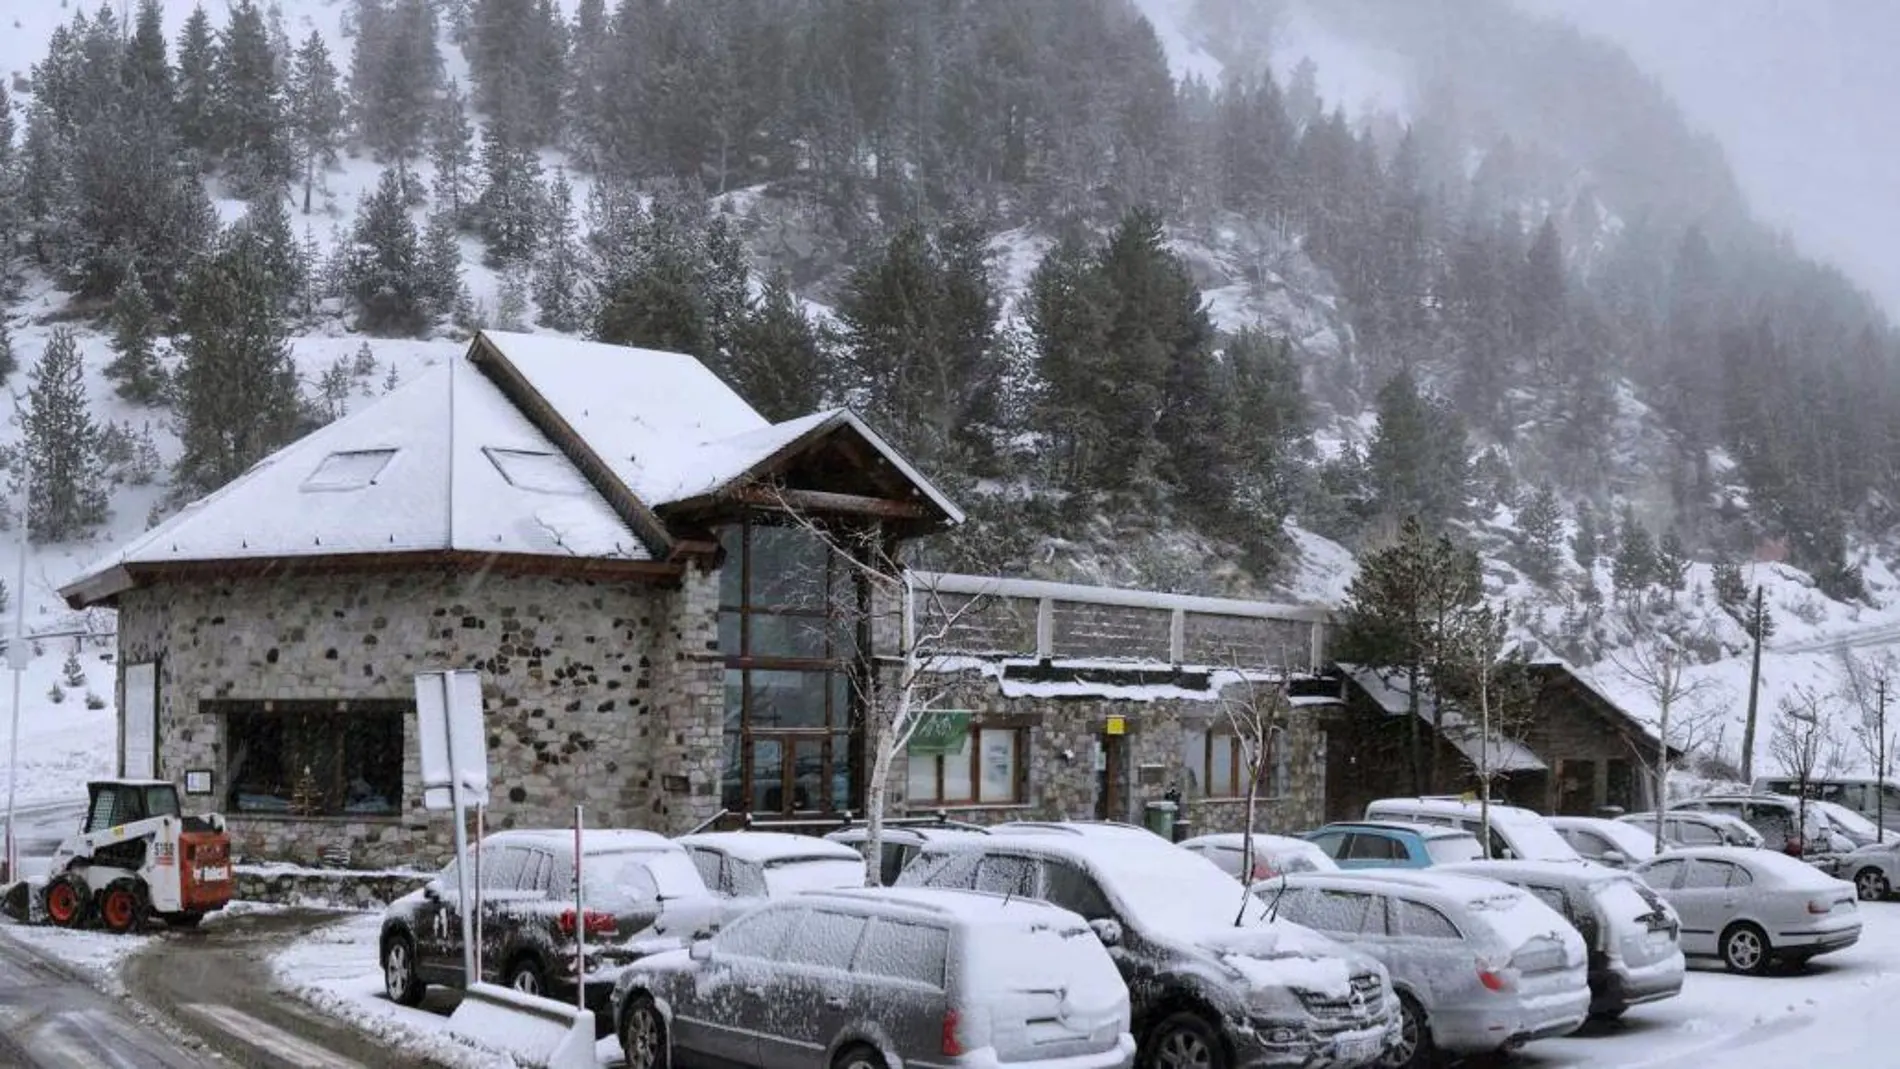 Nevada en la estación de esquí de los Llanos del Hospital, en Benasque (Huesca)